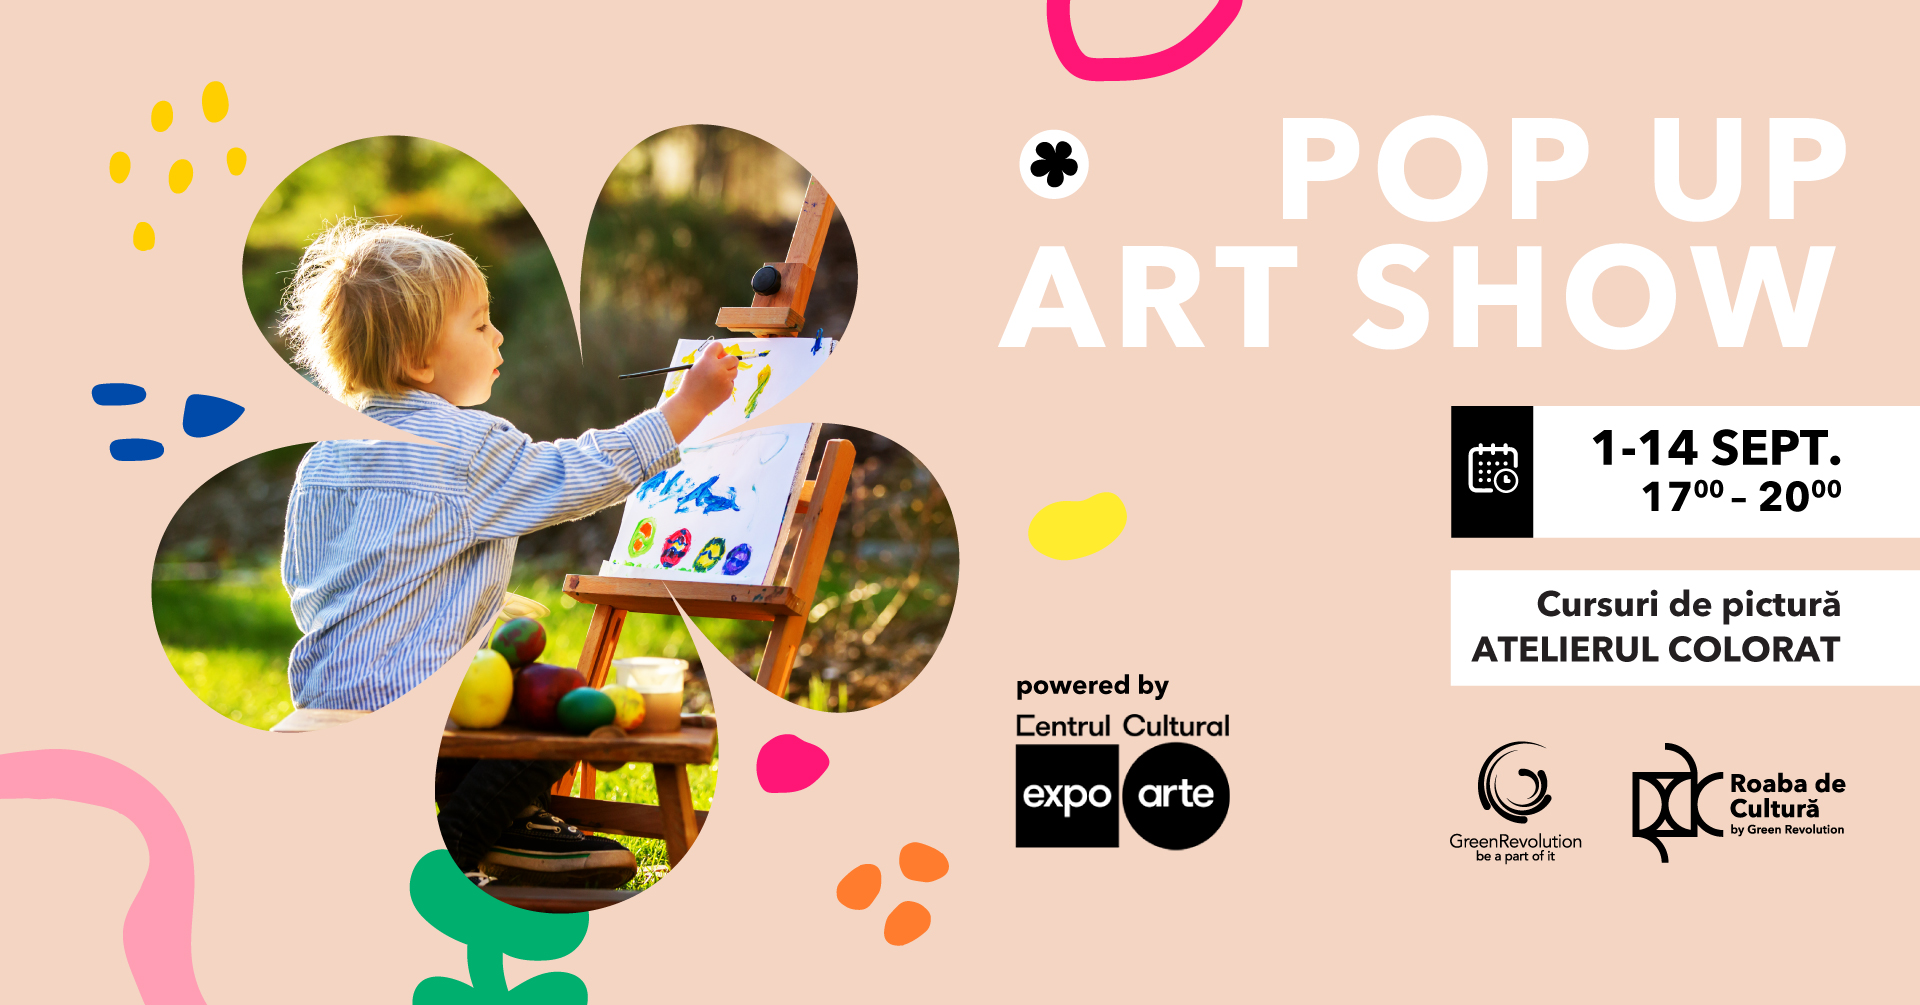 POP UP ART SHOW / Cursuri de pictură “Atelierul Colorat”